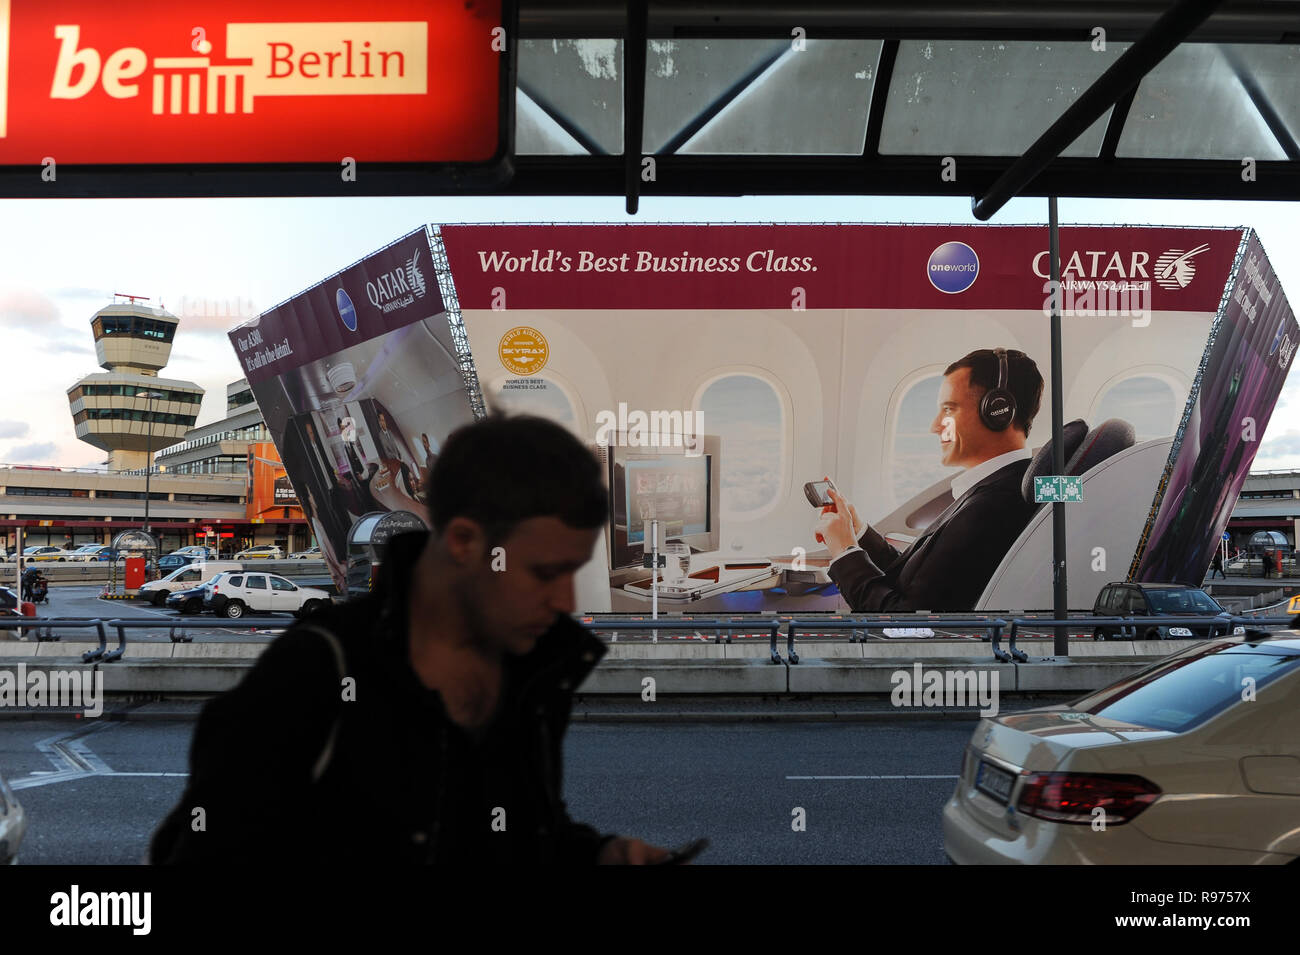 30.03.2015, Berlino, Germania, Europa - cartelloni pubblicitari per la business class della Qatar Airways presso l'aeroporto di Tegel. Foto Stock